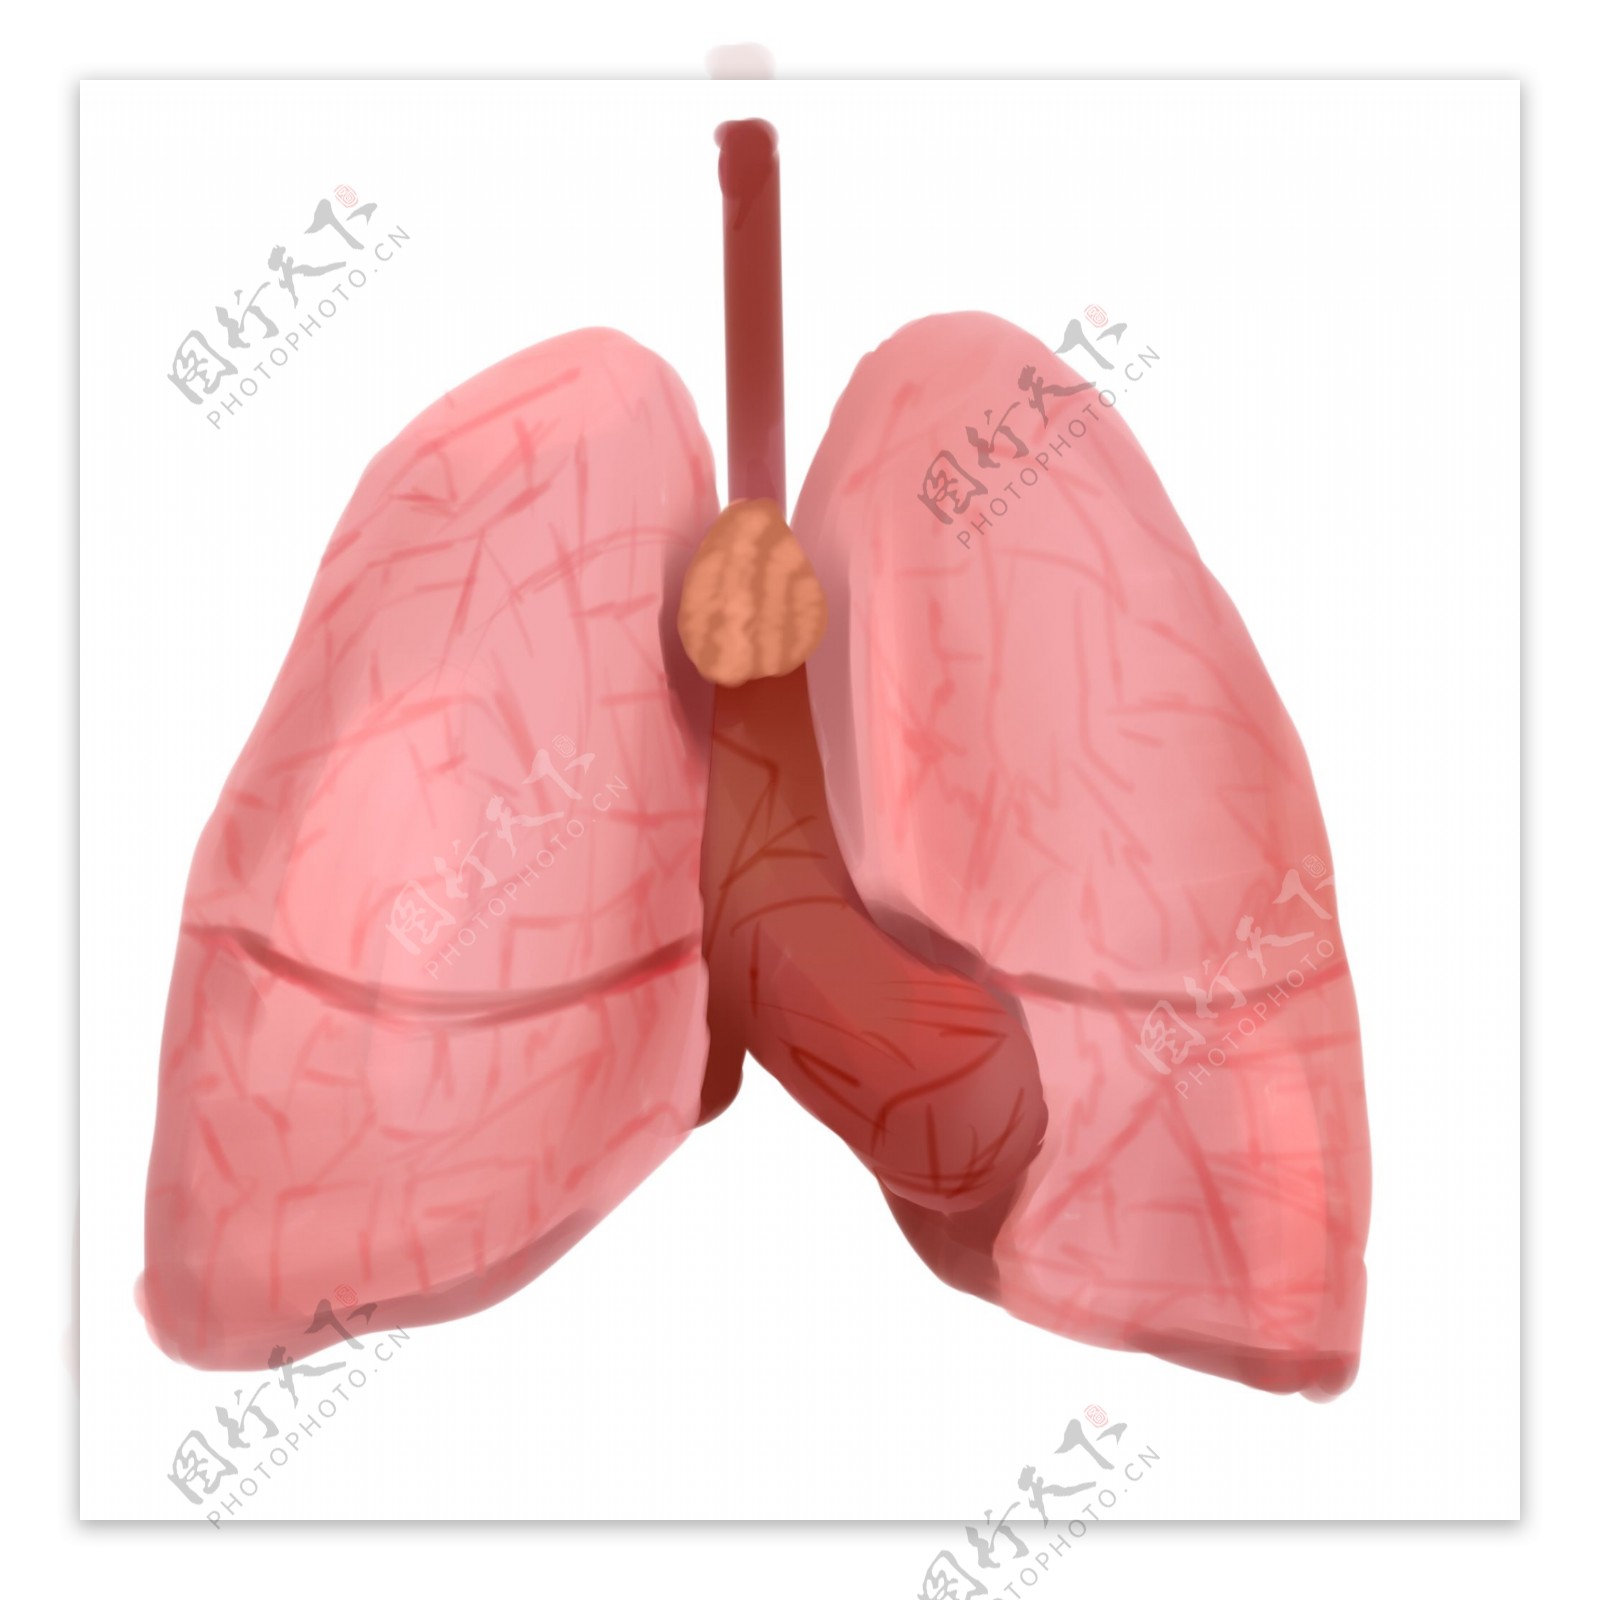 人体器官肺脏插画